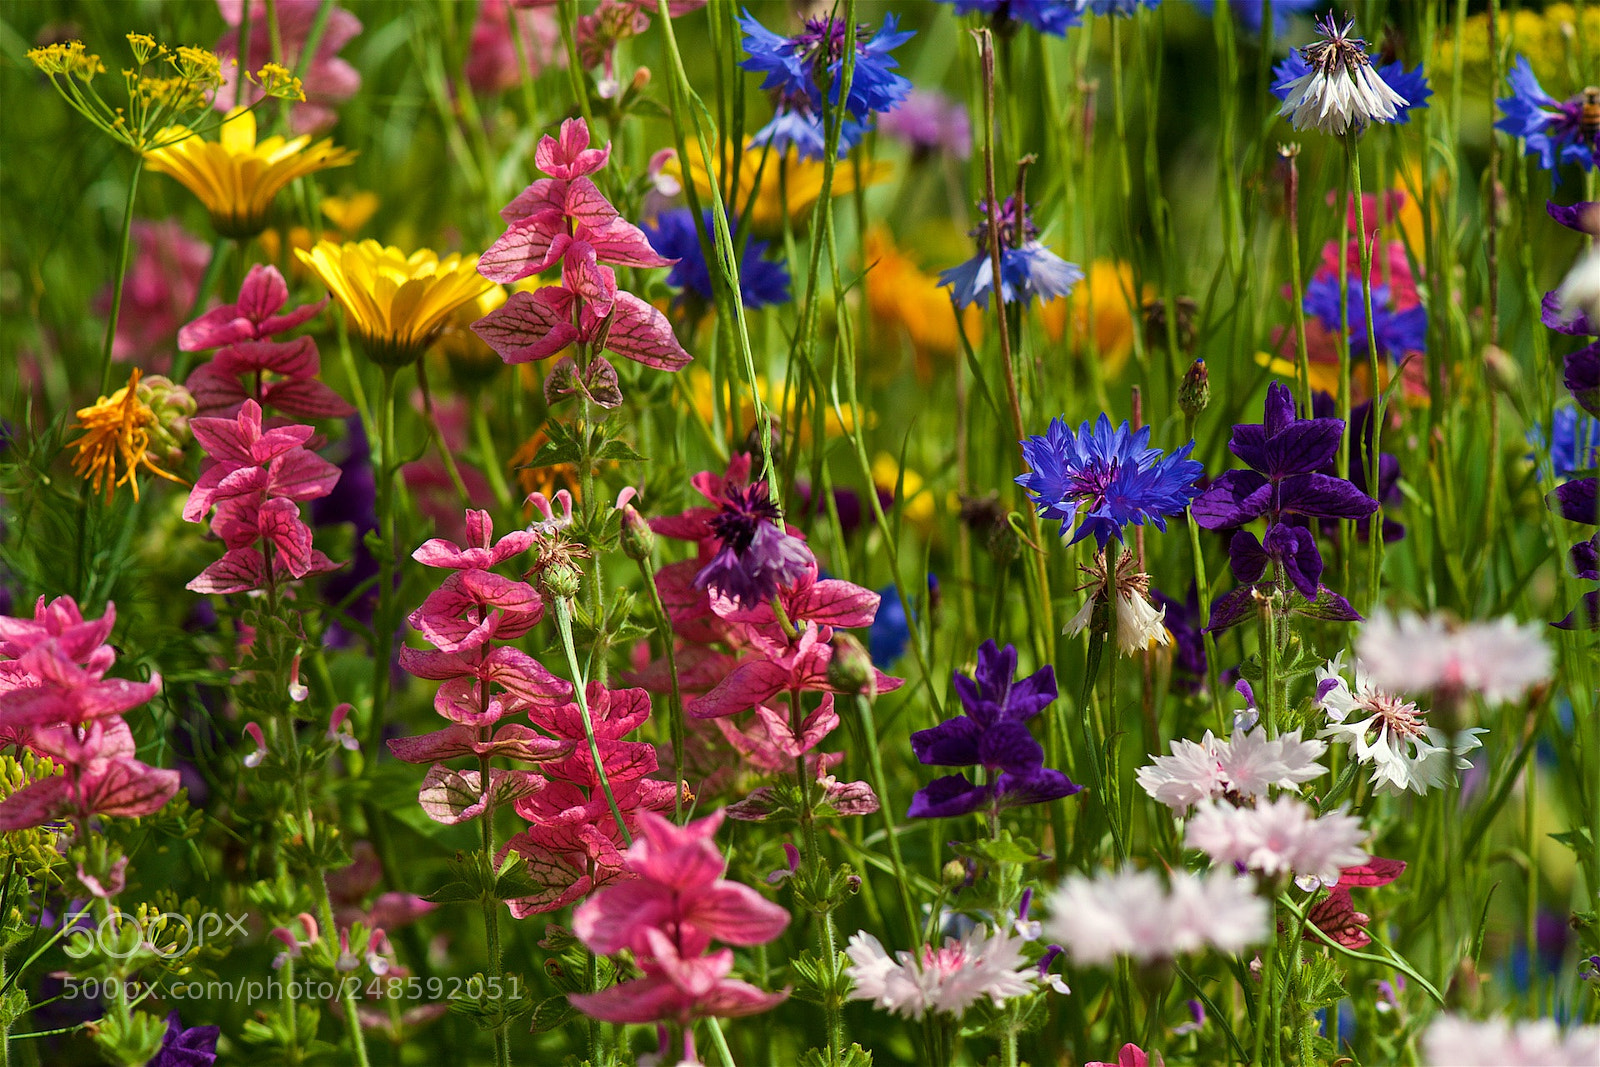 Nikon D700 sample photo. Garden's beauties. photography